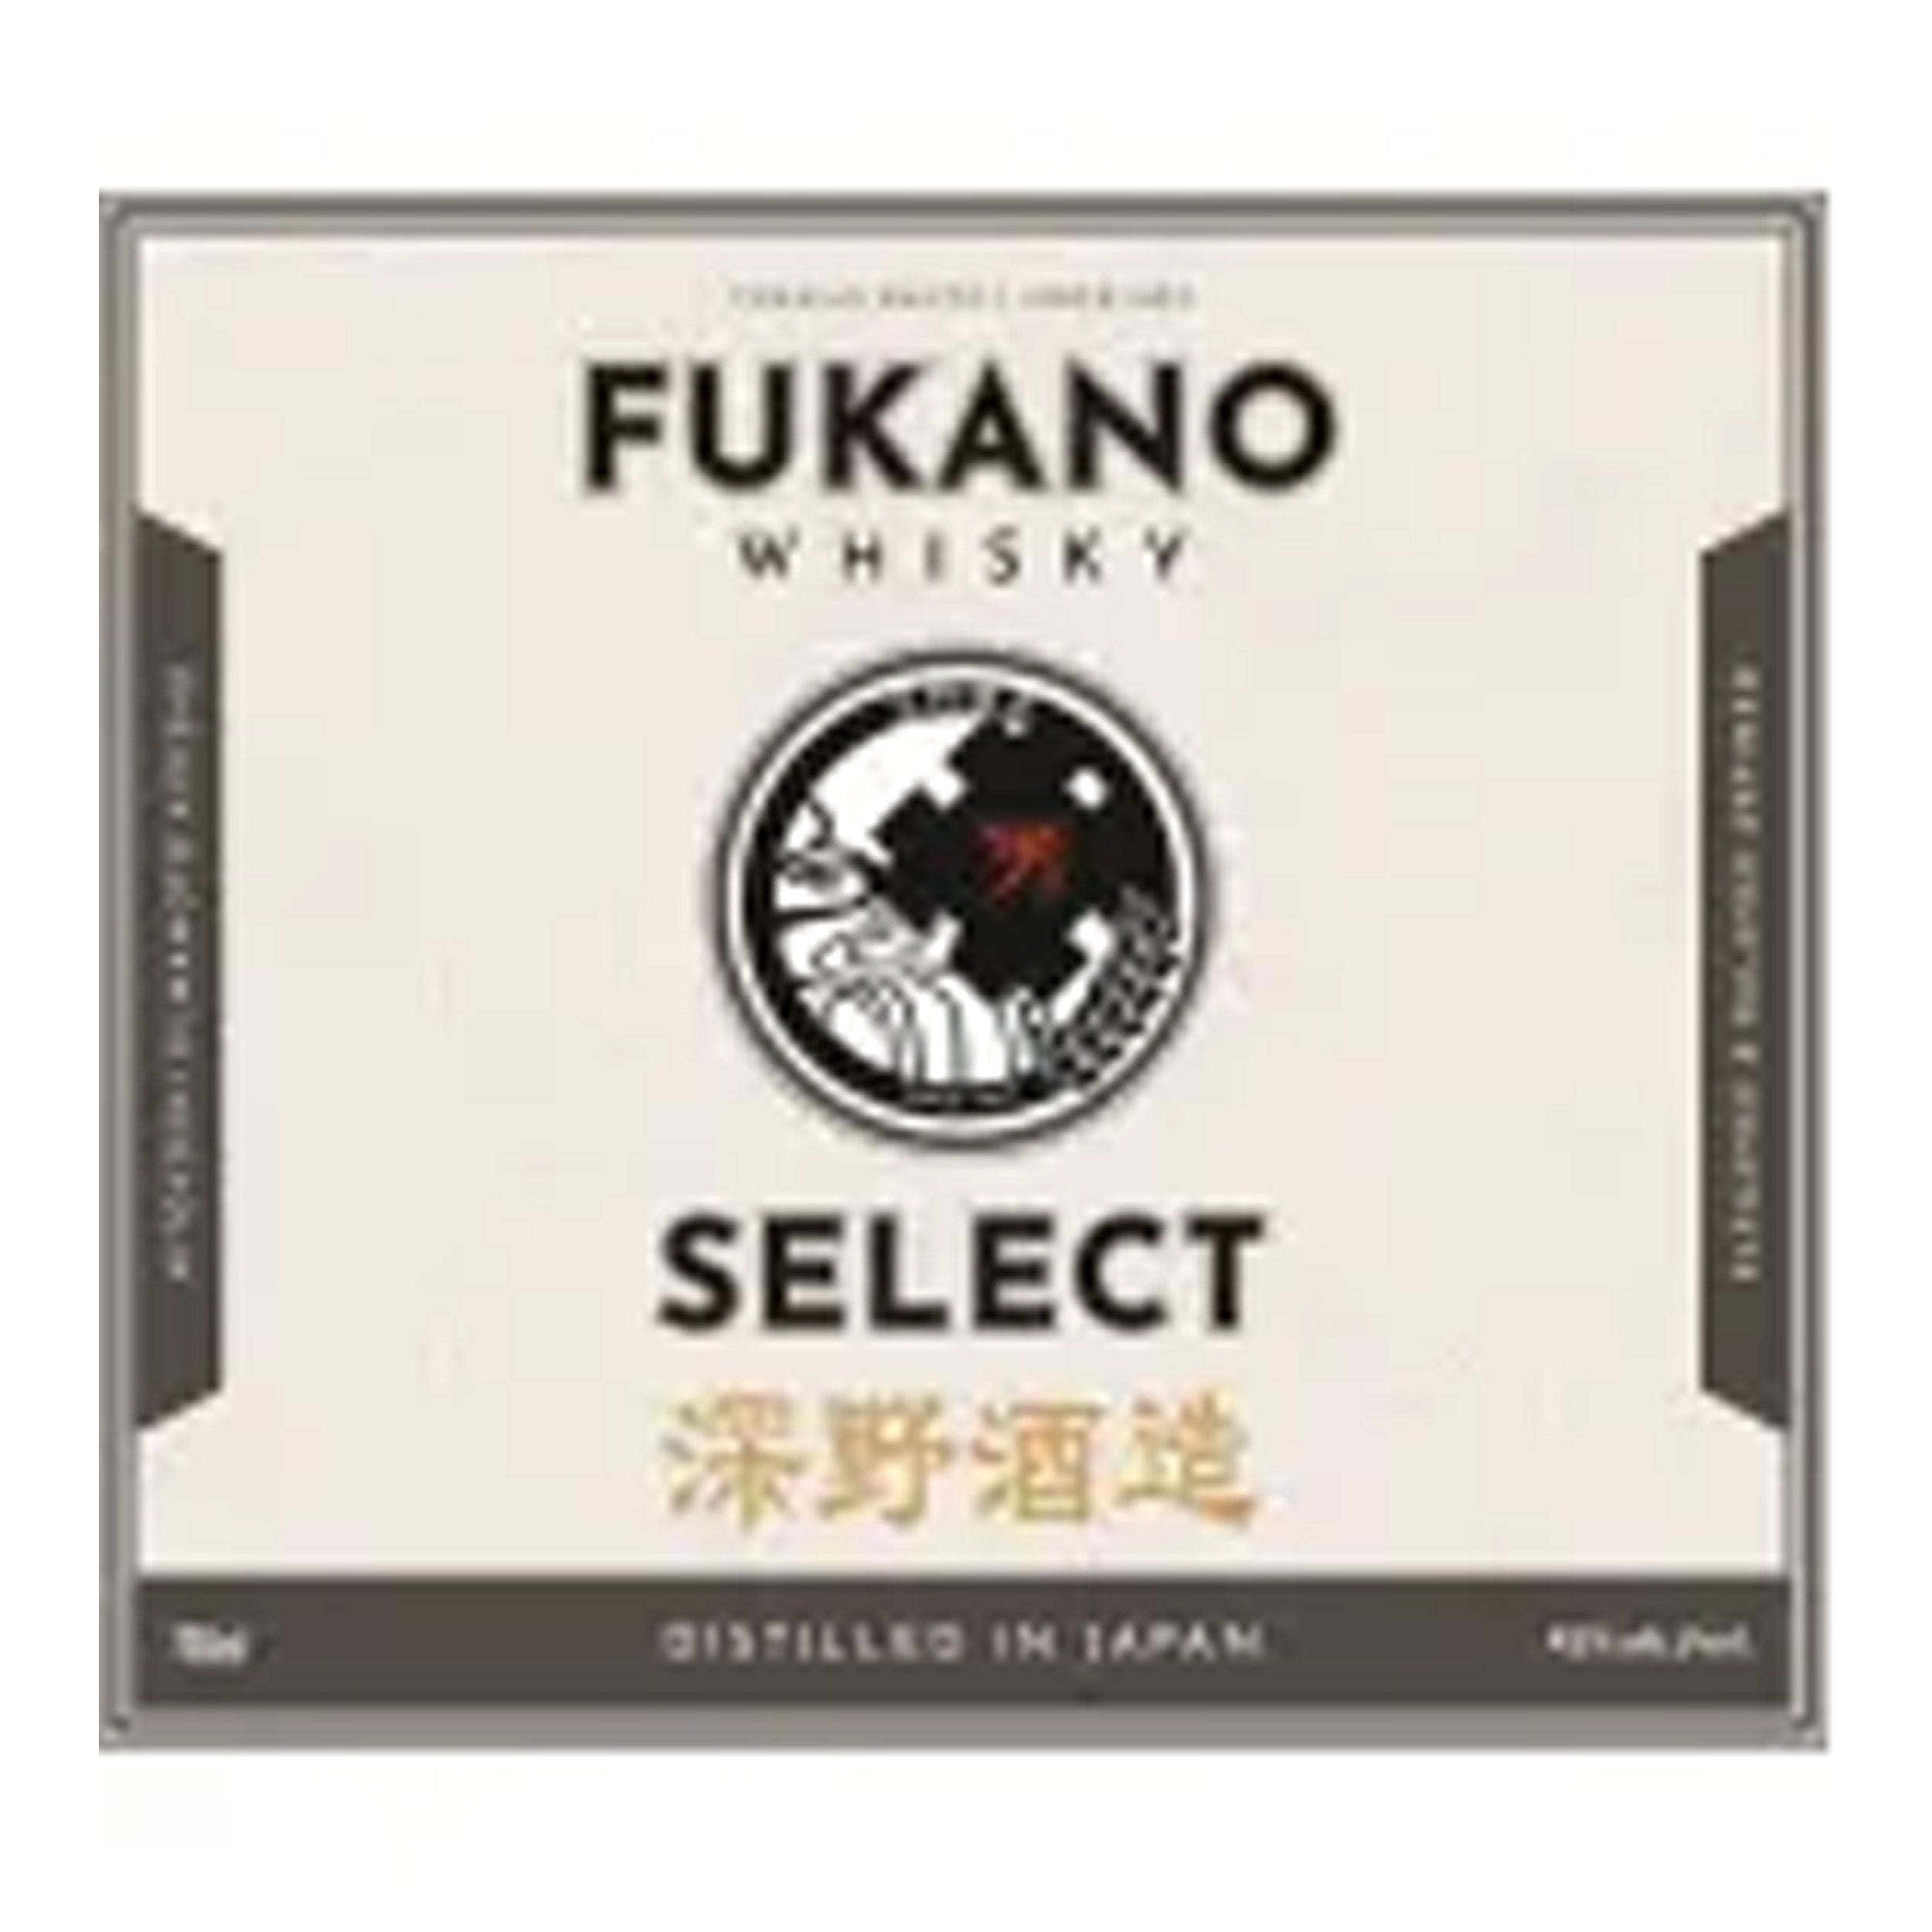 Fukano Select Whiskey